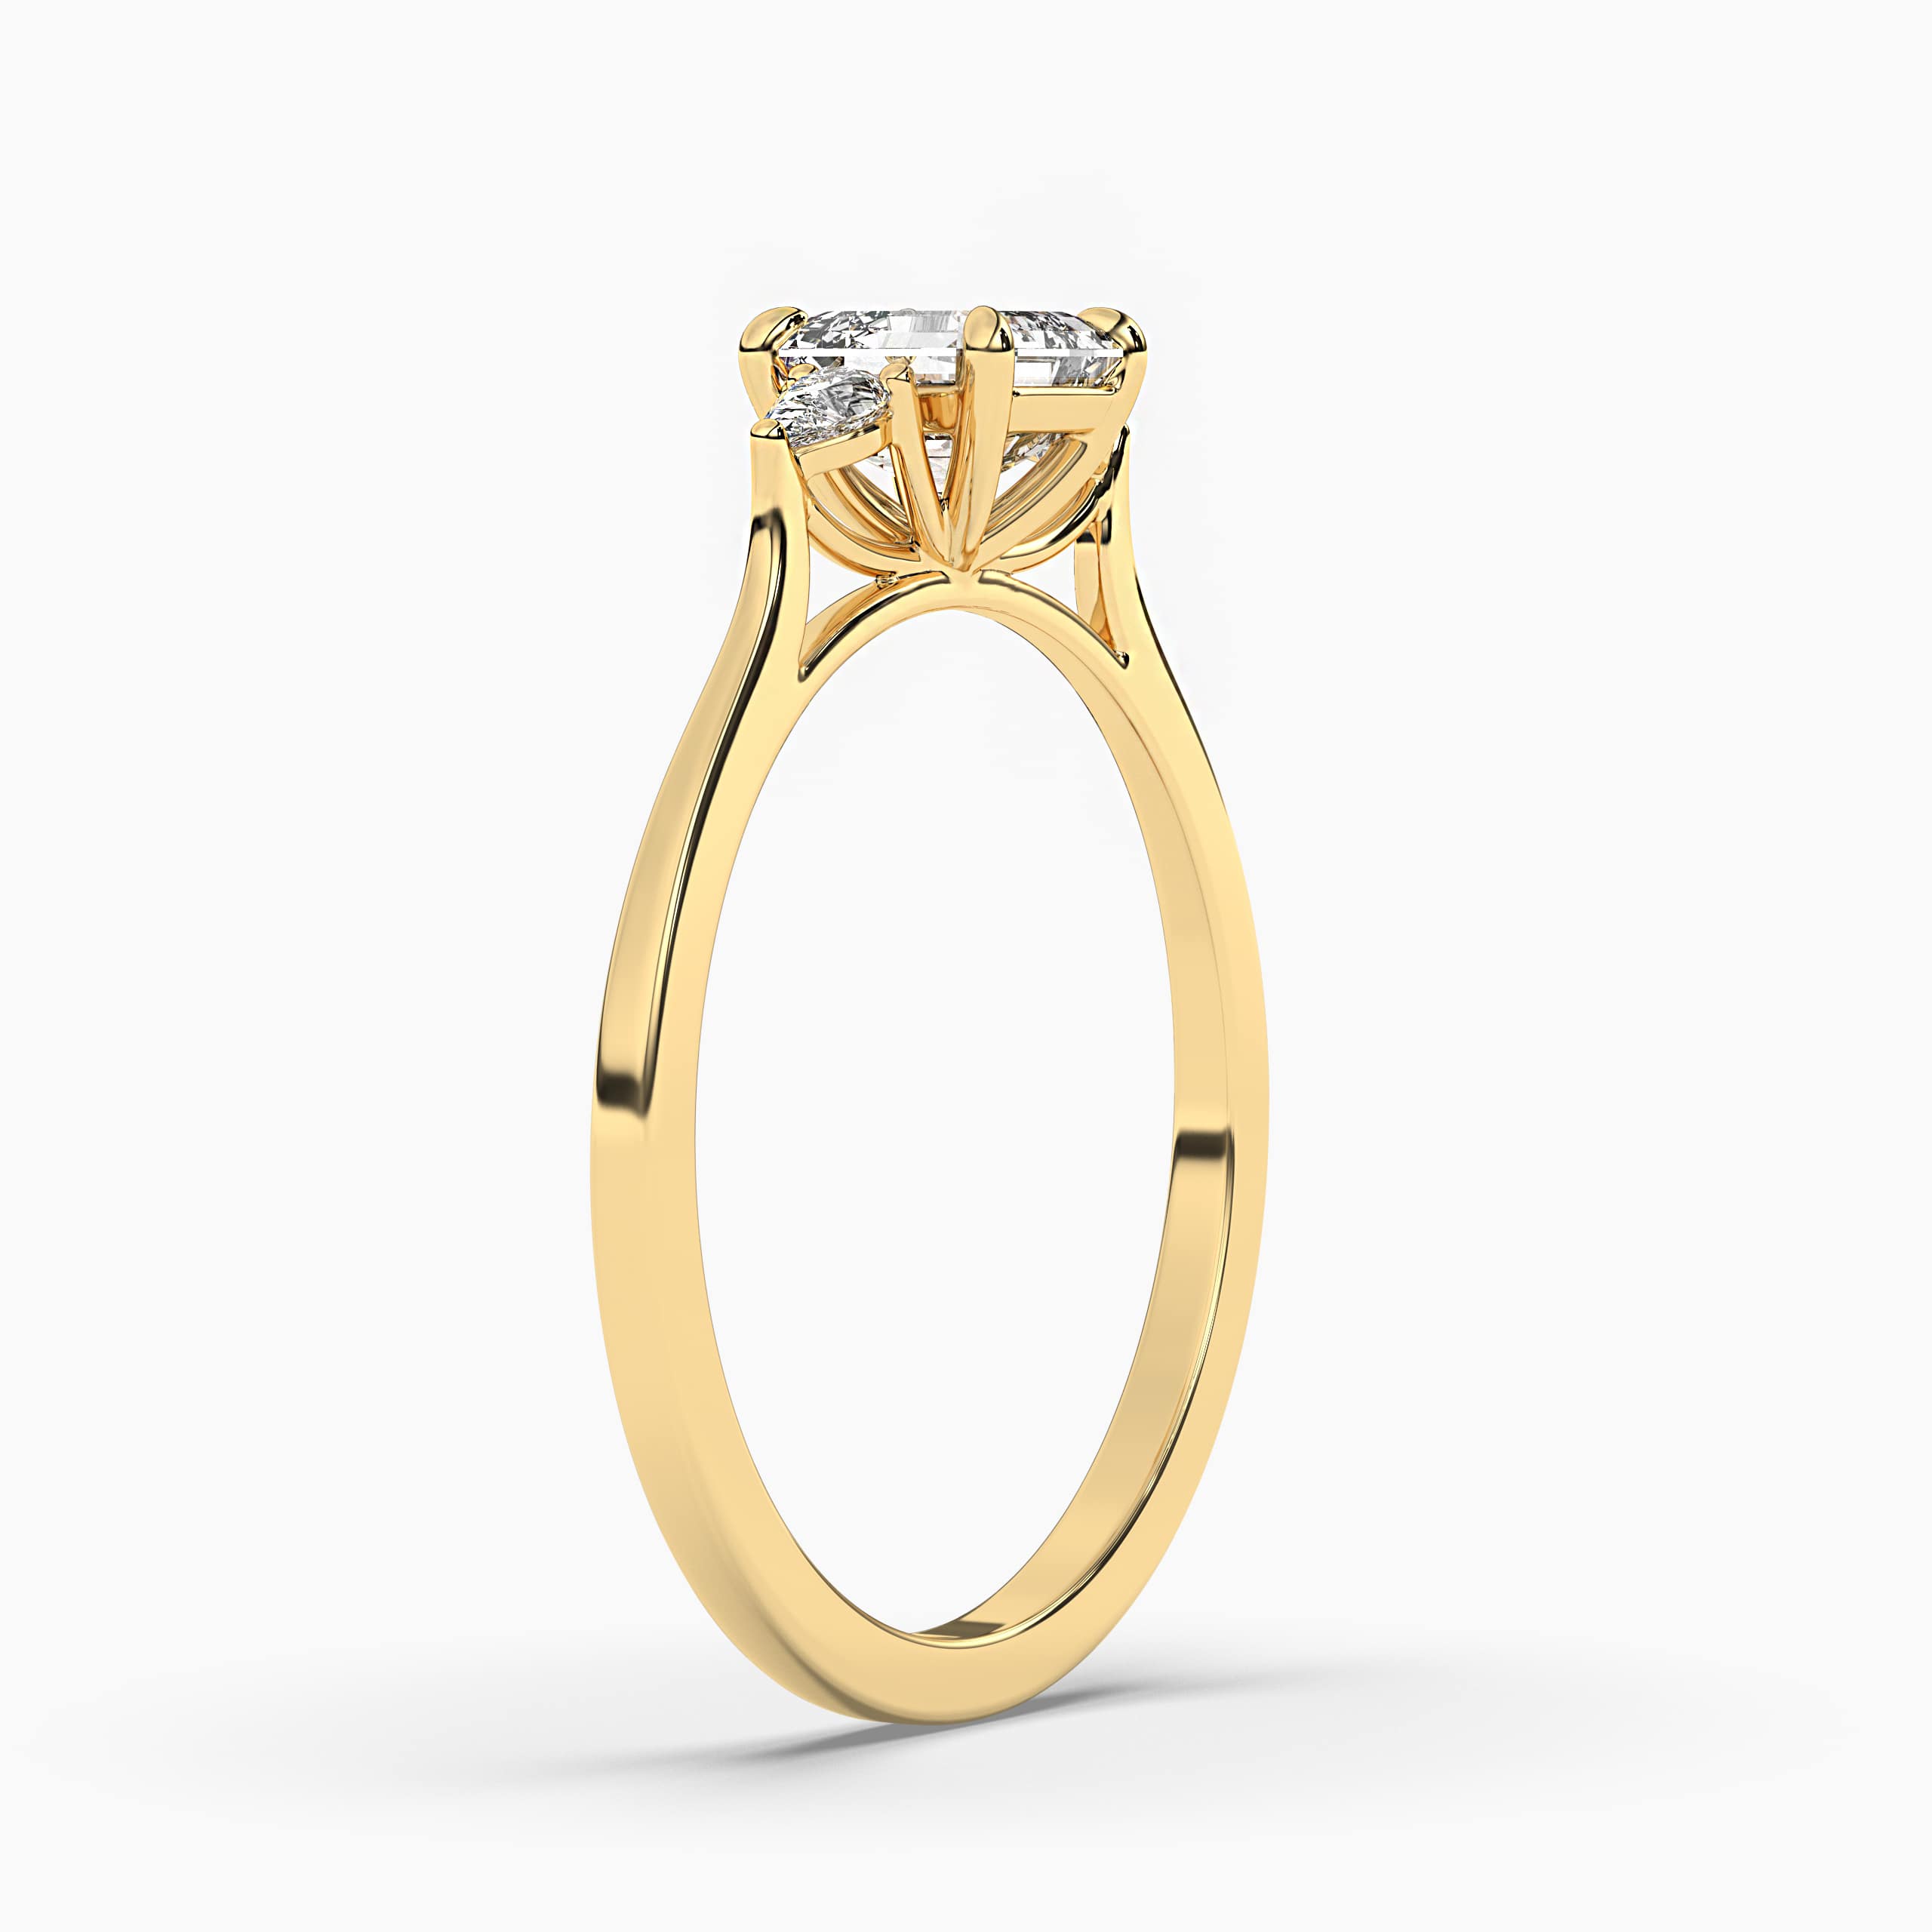 Engagement Ring with an Asscher Cut Yellow Diamond